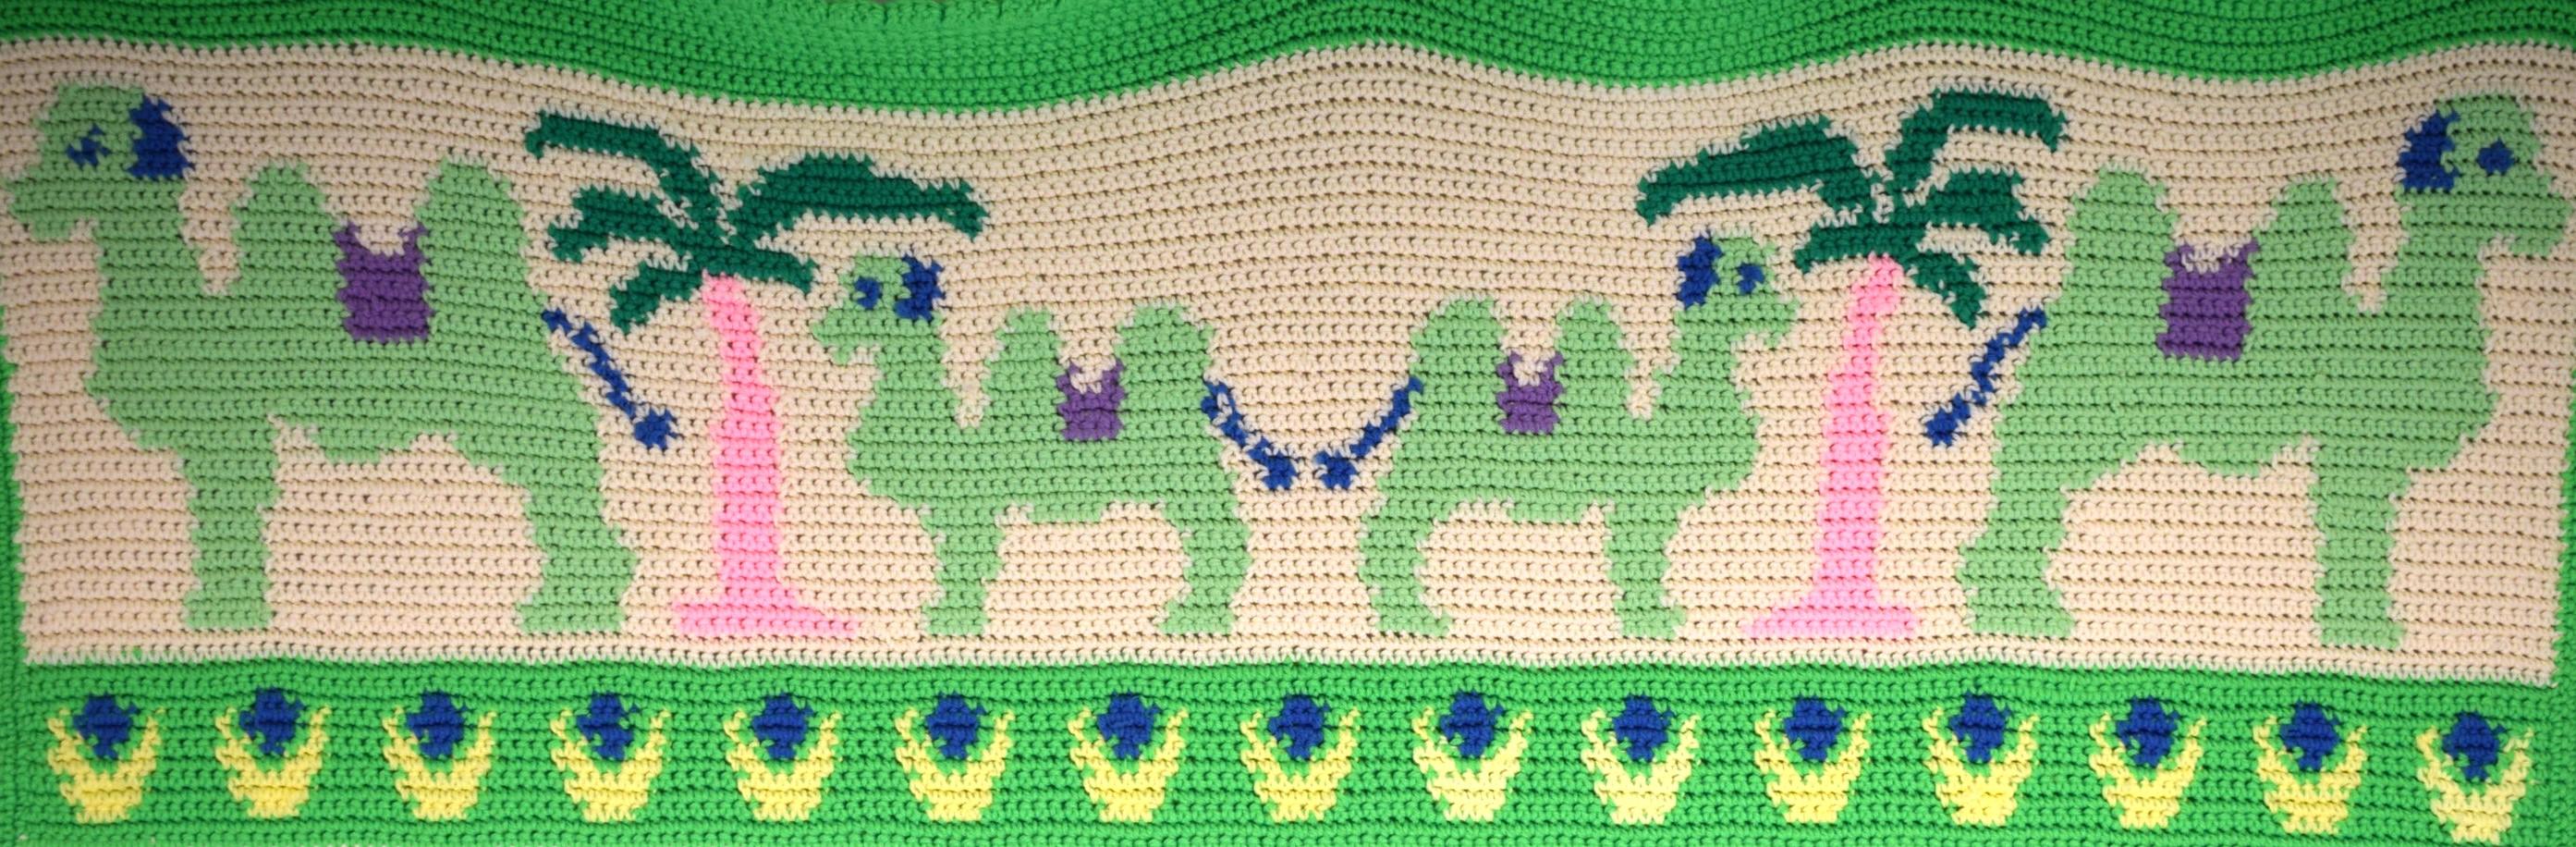 crochet panel blanket